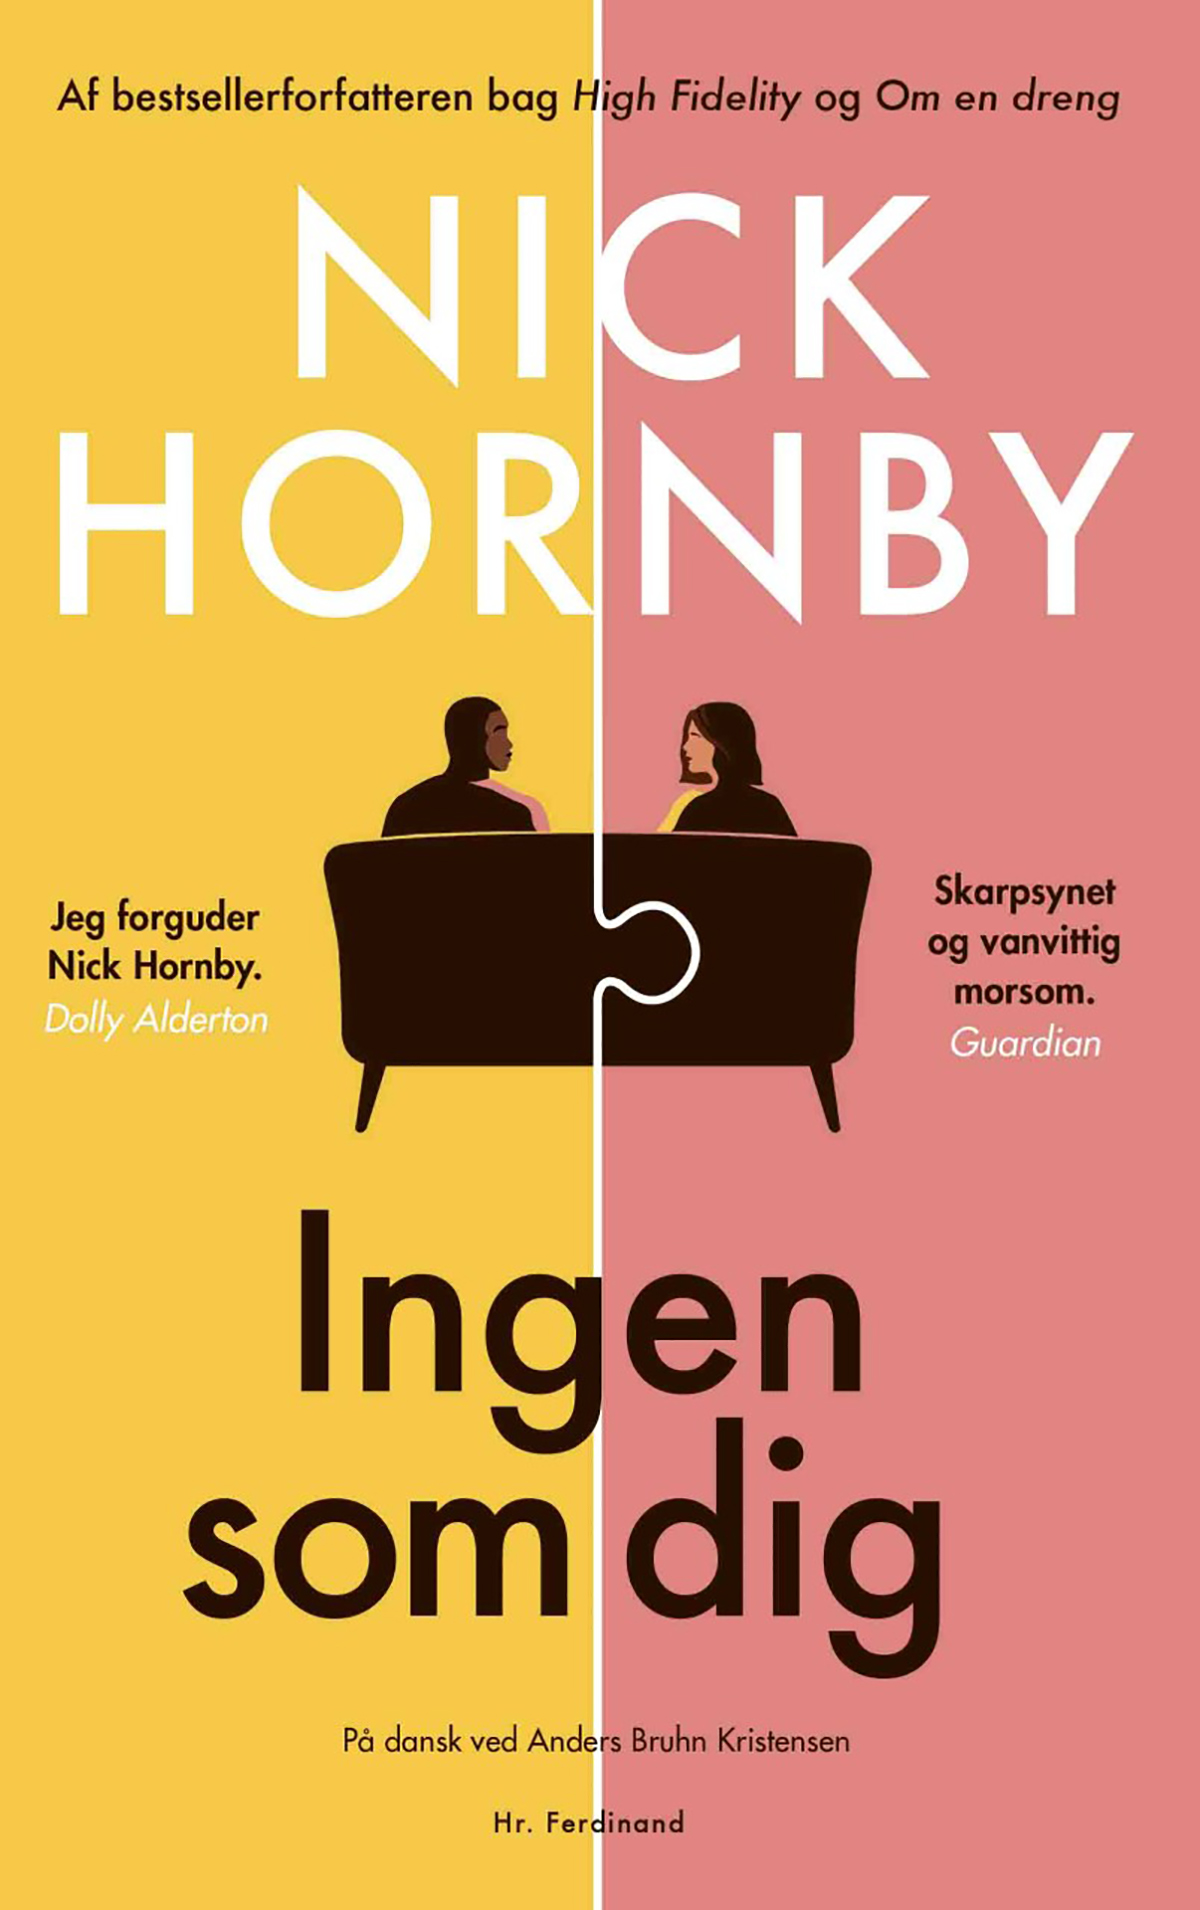 Stor vrangforestilling Ultimate interpersonel Se top 10 bøger til kvinder: Dét skal du læse i ferien - ALT.dk